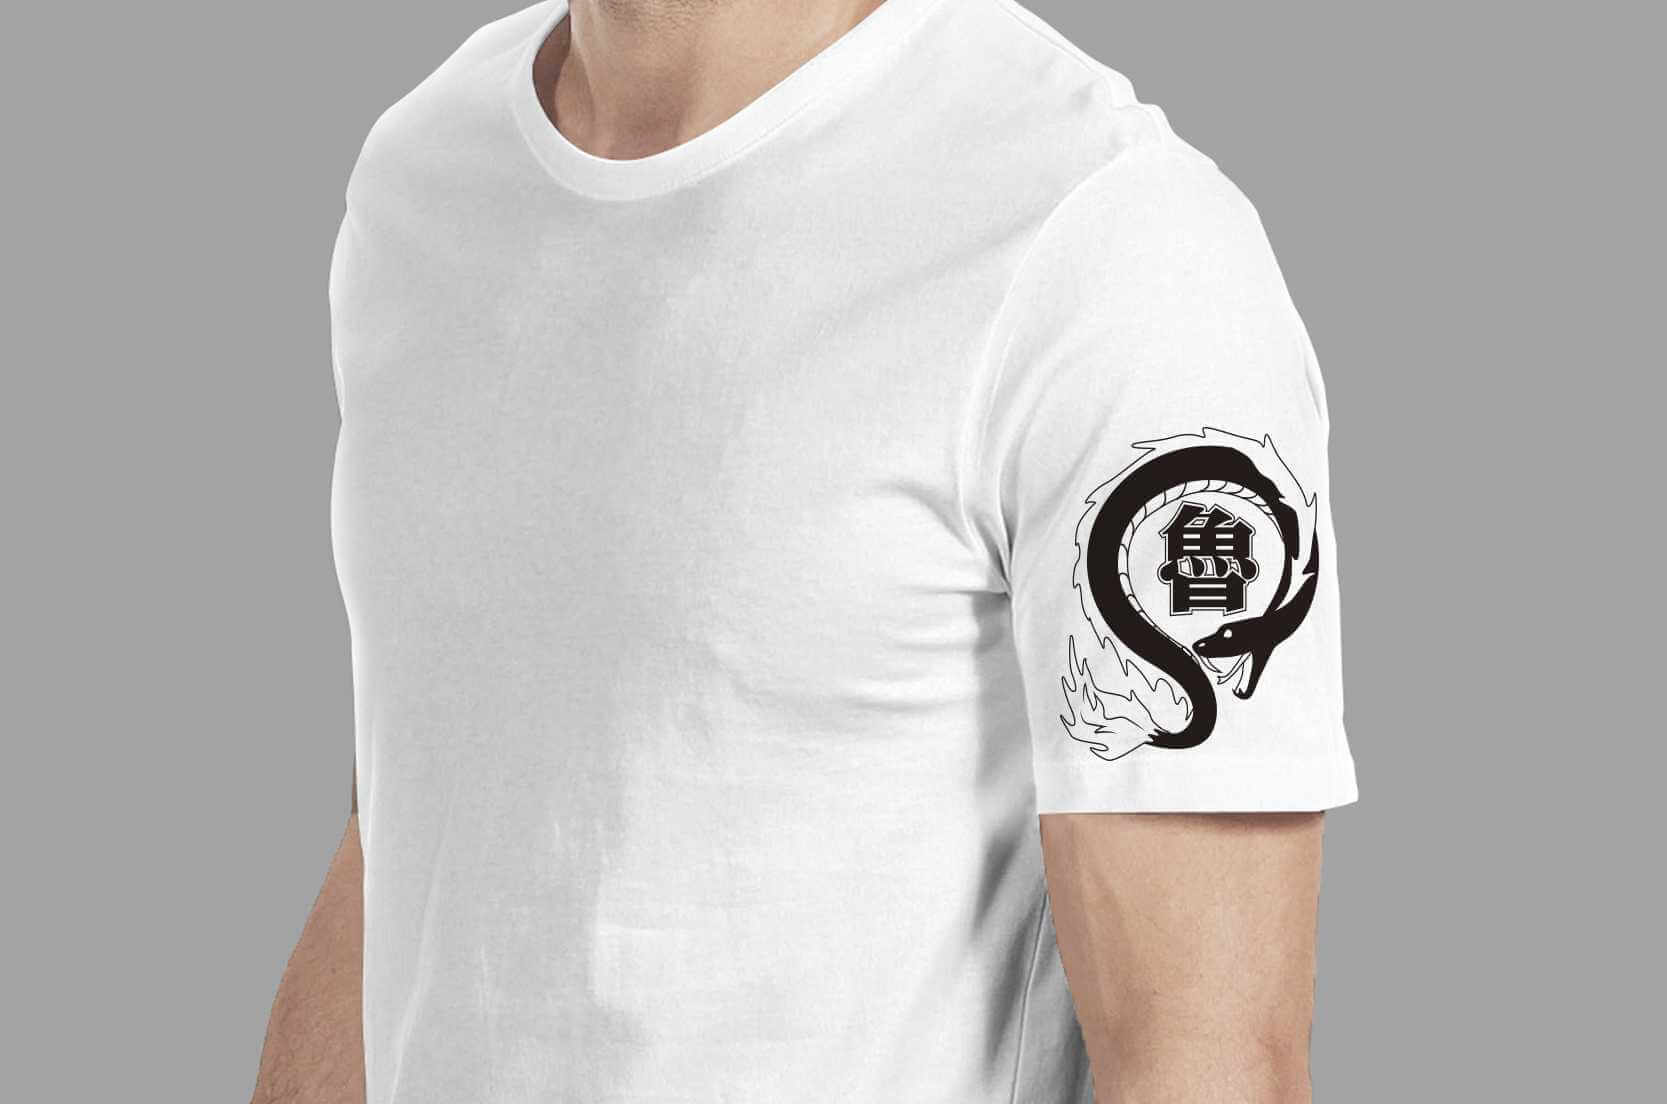 特級魯蛇T恤的第1張圖(客製化公司制服、班服製作、團體服製作等示意或作品圖)